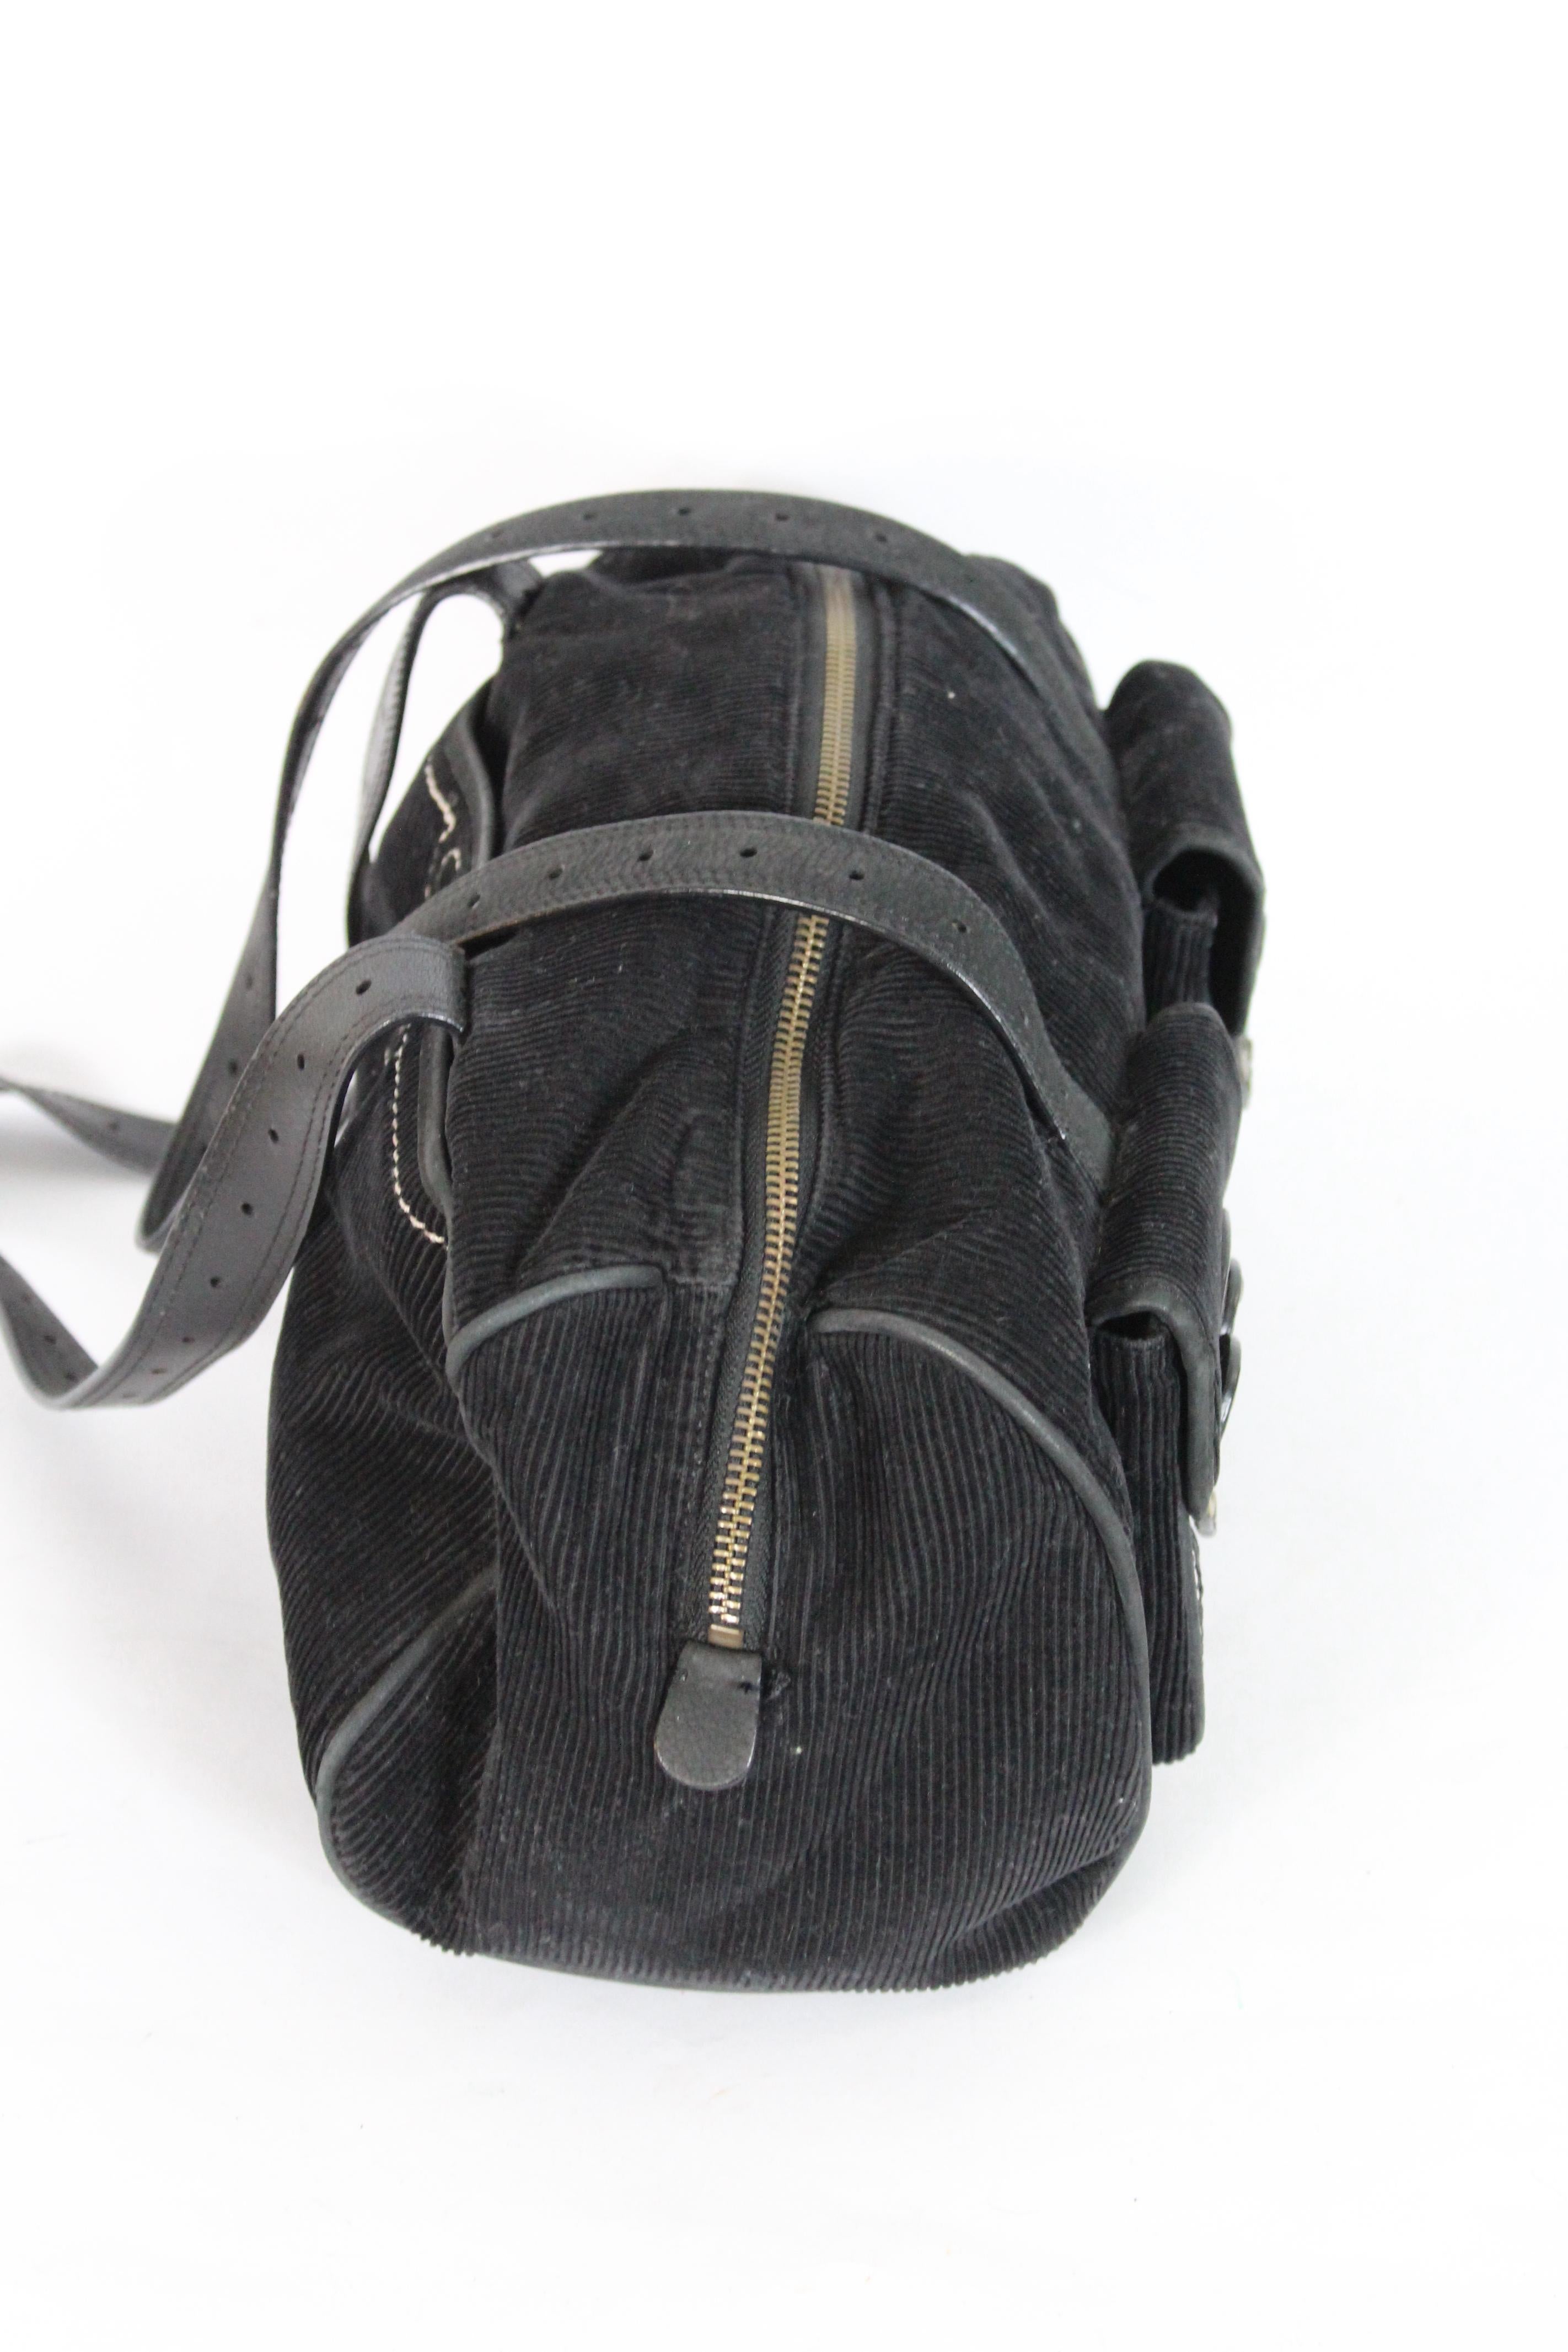 Moschino Black Velvet Shoulder Bag 2